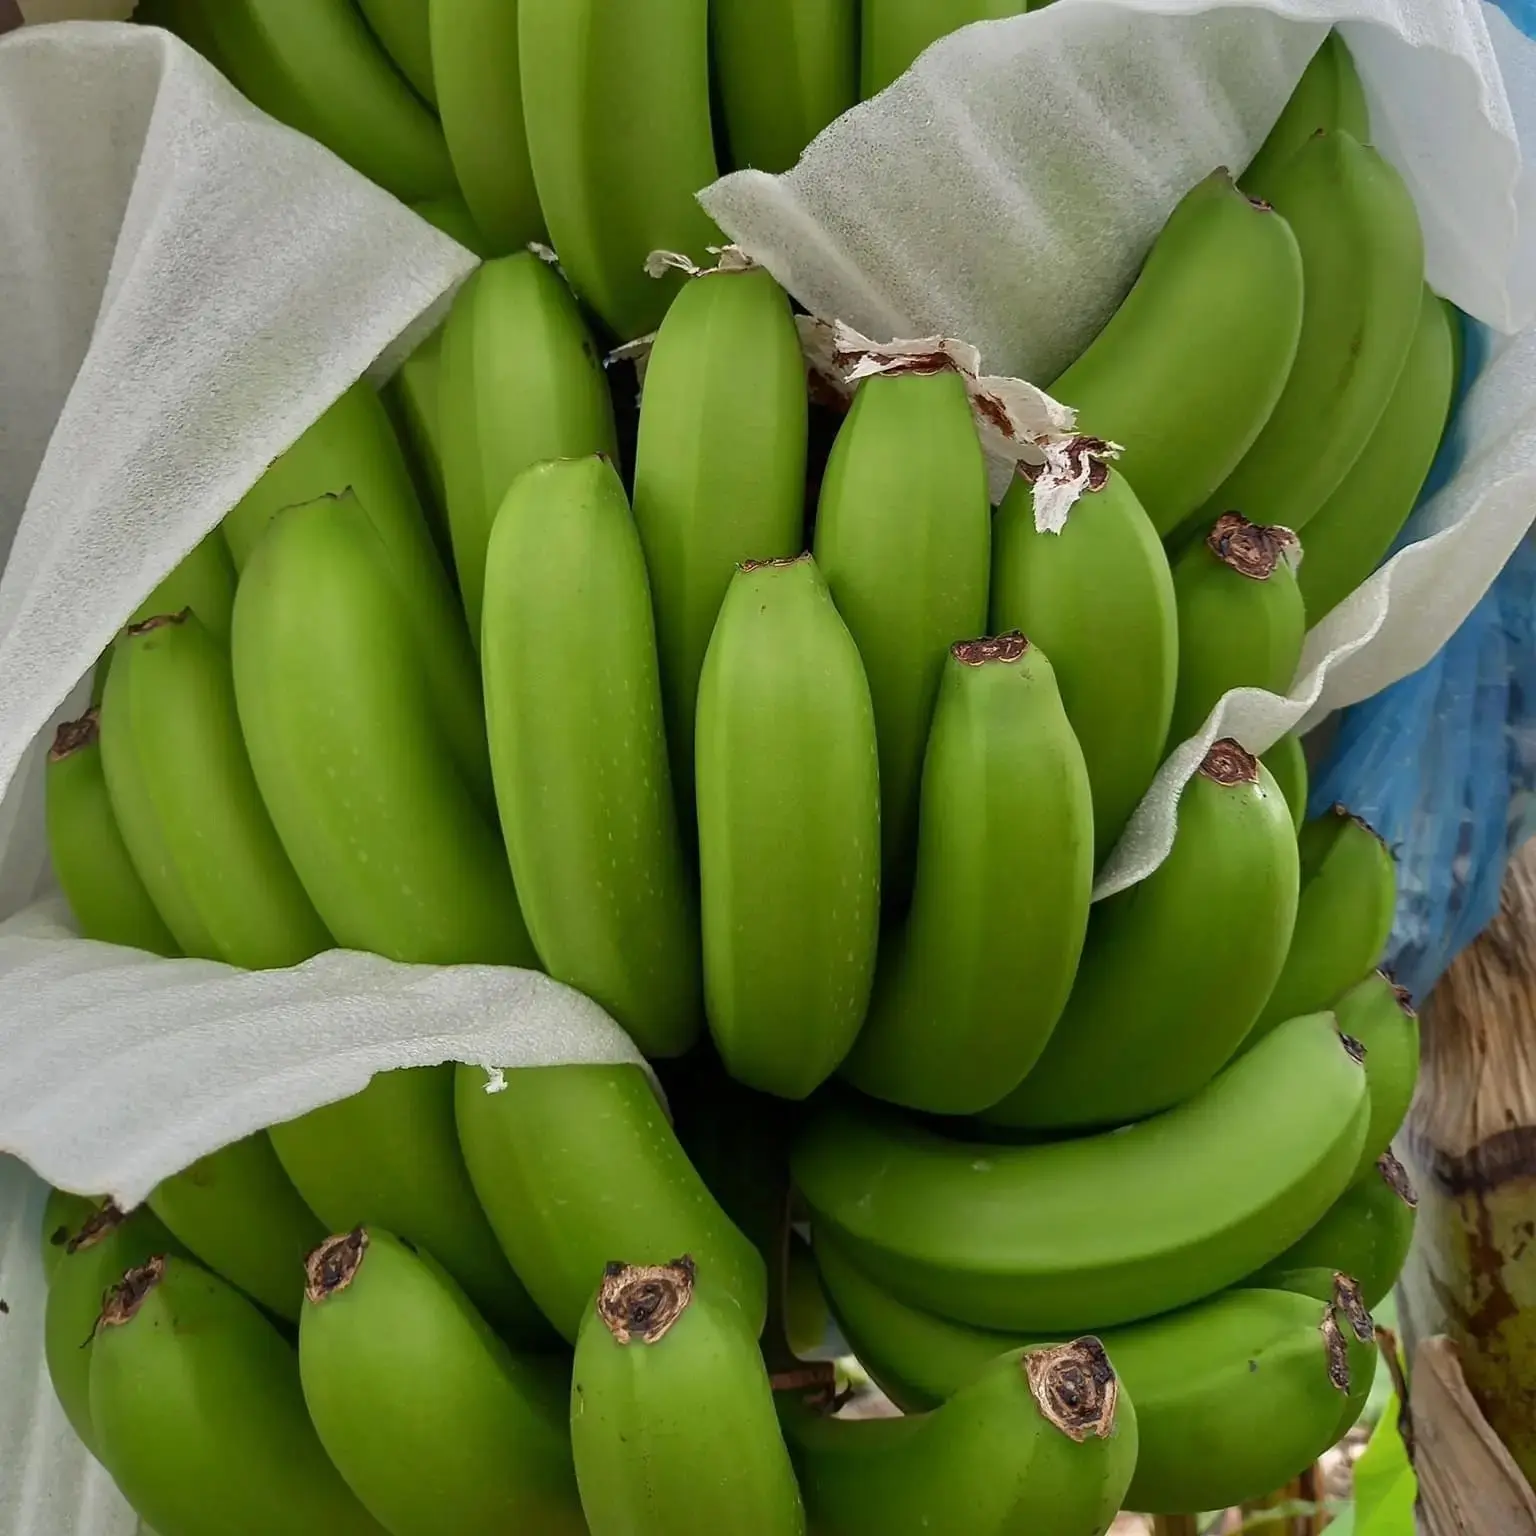 Pisang segar budidaya pisang hijau & kuning dengan harga pabrik berasal dari Amerika Selatan